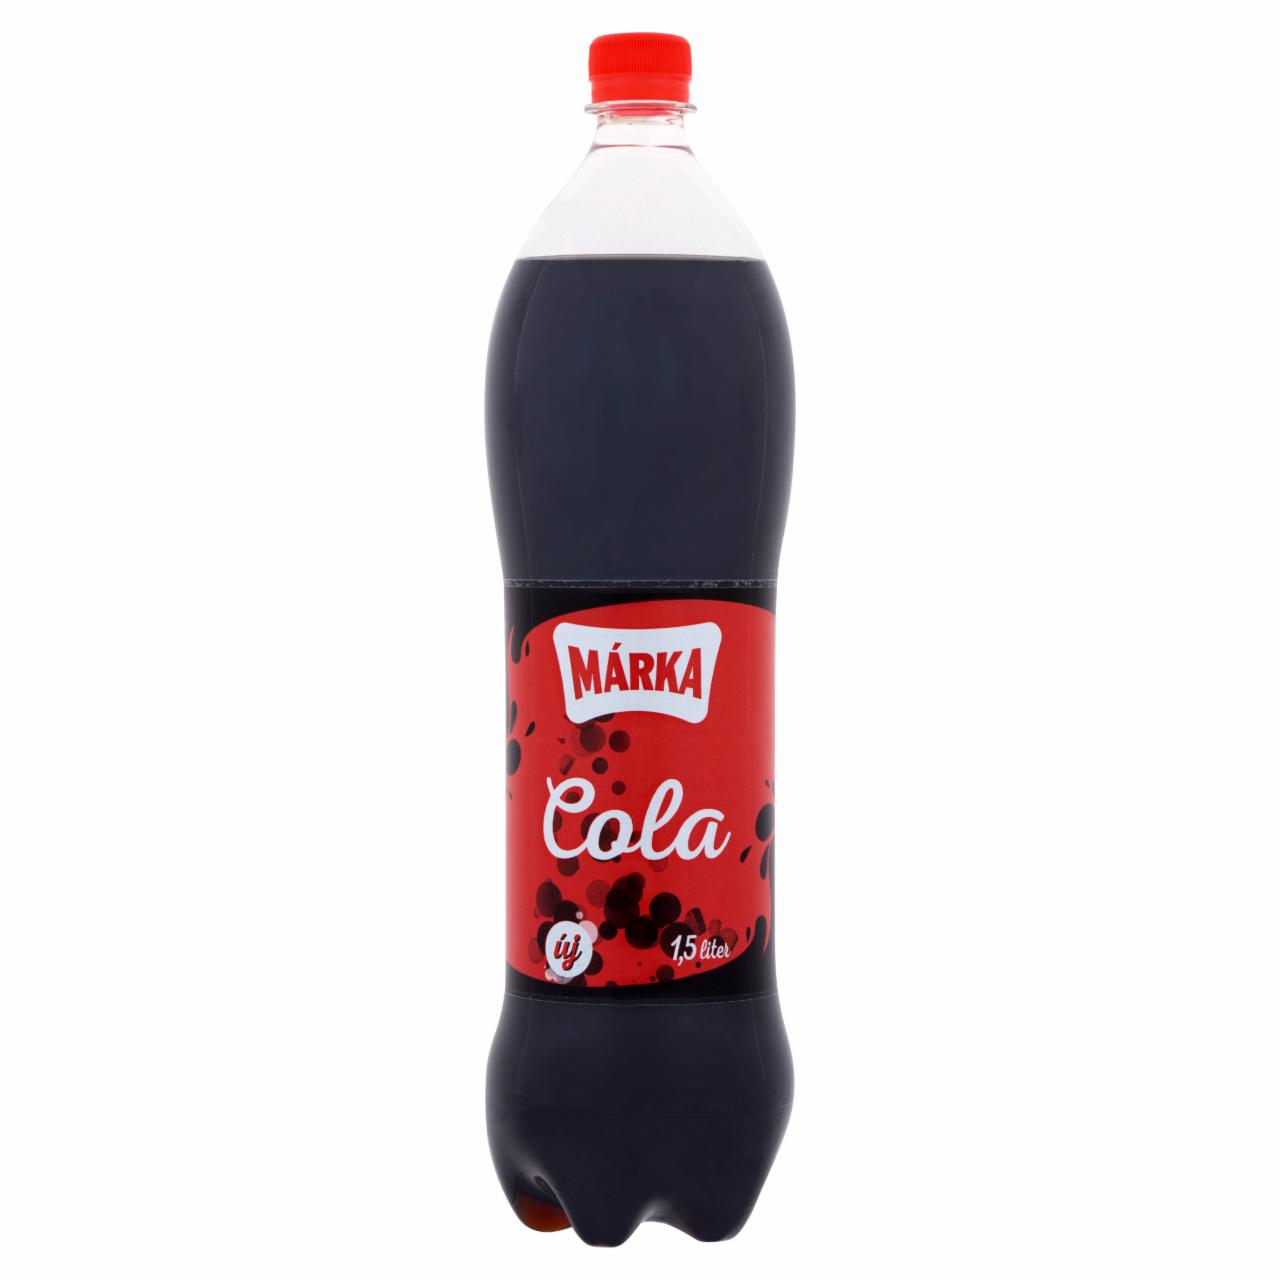 Képek - Márka cola ízű szénsavas üdítőital, cukorral és édesítőszerekkel 1,5 l